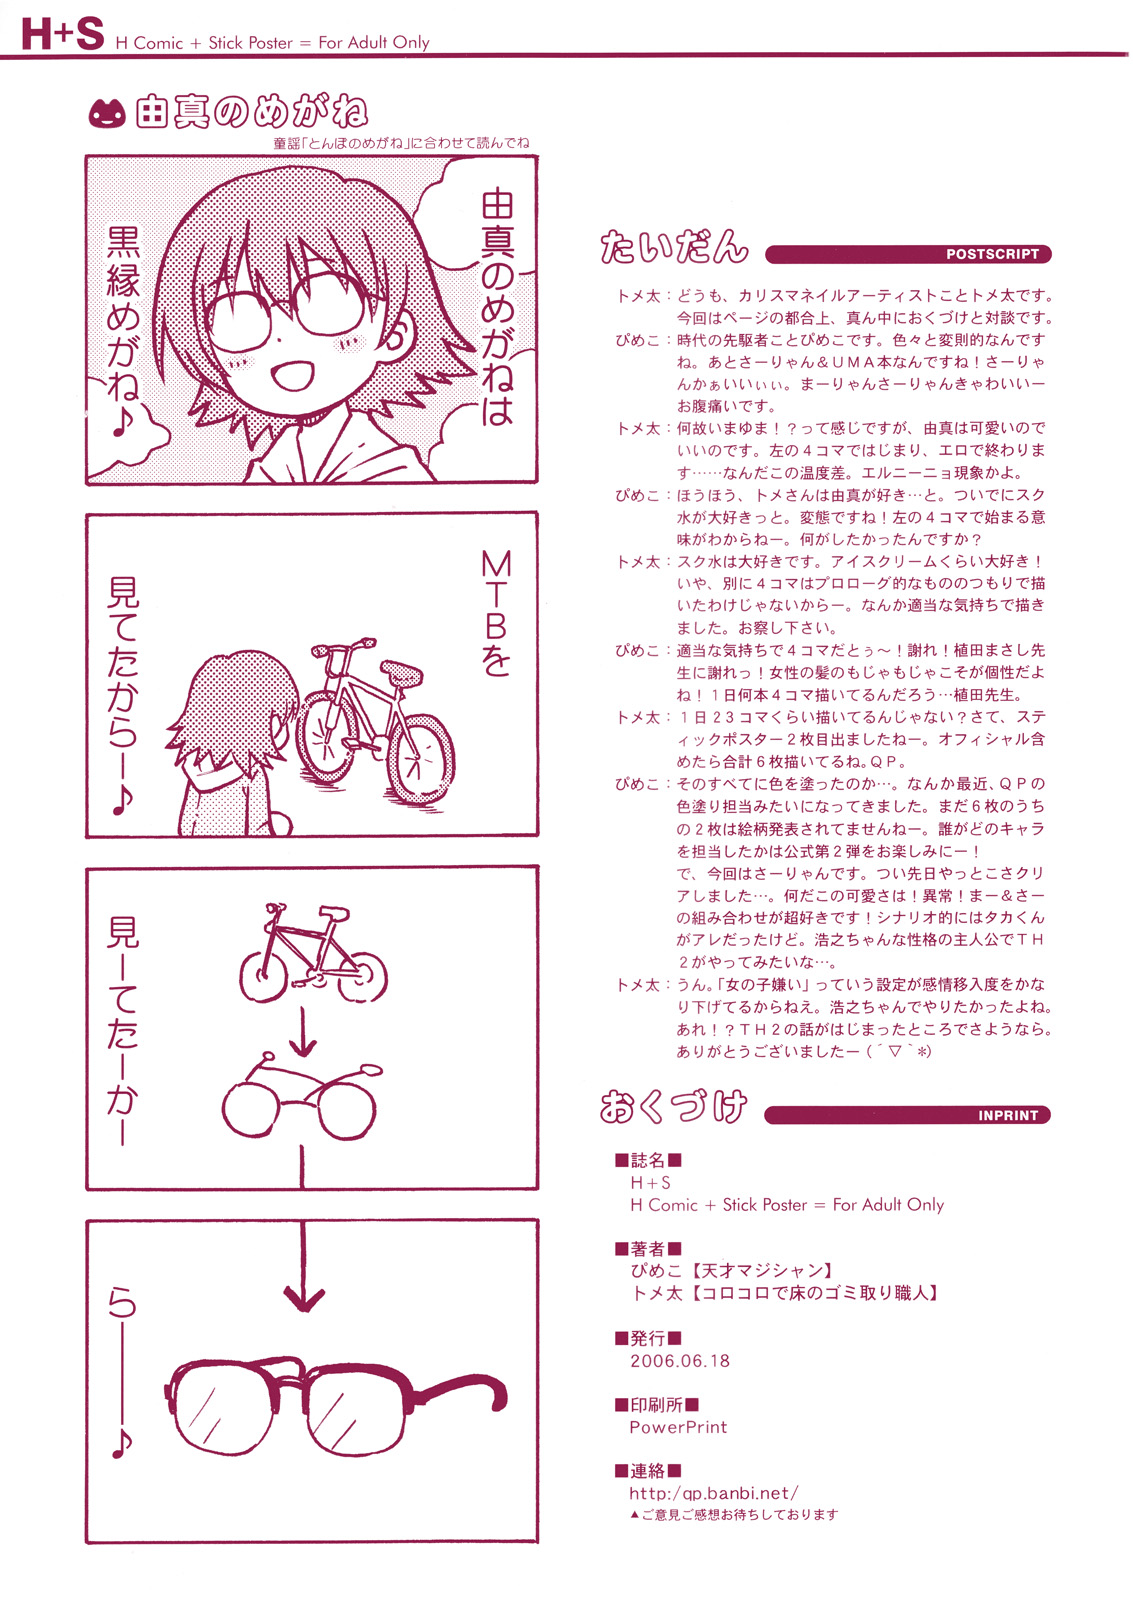 (サンクリ32) [QP:flapper (ぴめこ、トメ太)] H+S - H Comic + Stick Poster = For Adult Only (トゥハート2)